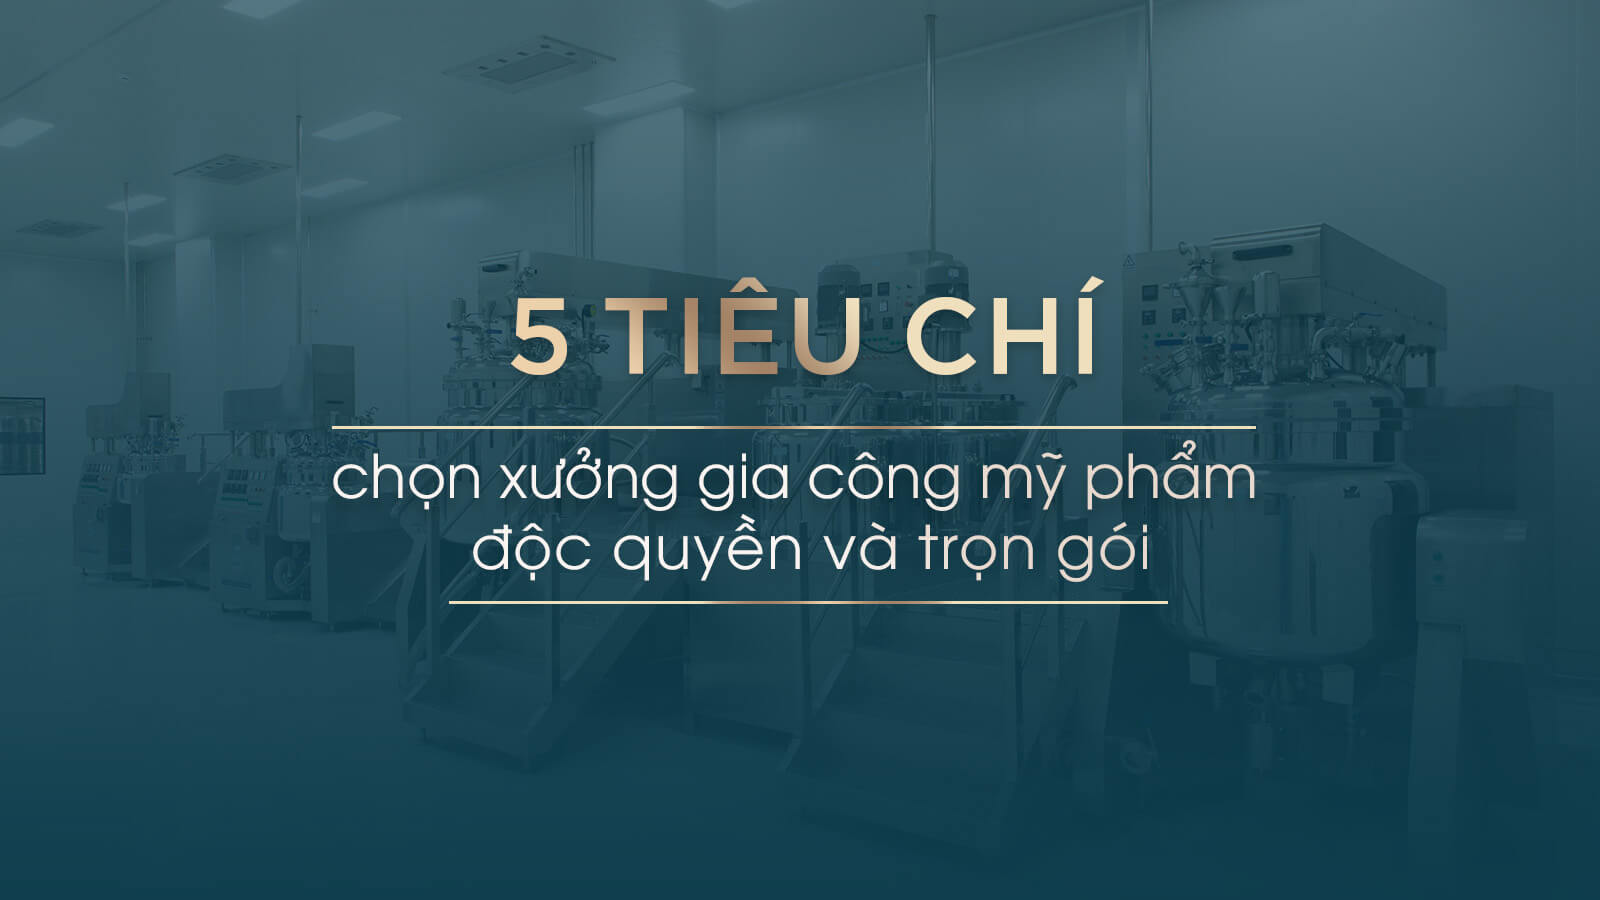 5-tieu-chi-chon-xuong-gia-cong-my-pham-doc-quyen-tron-goi